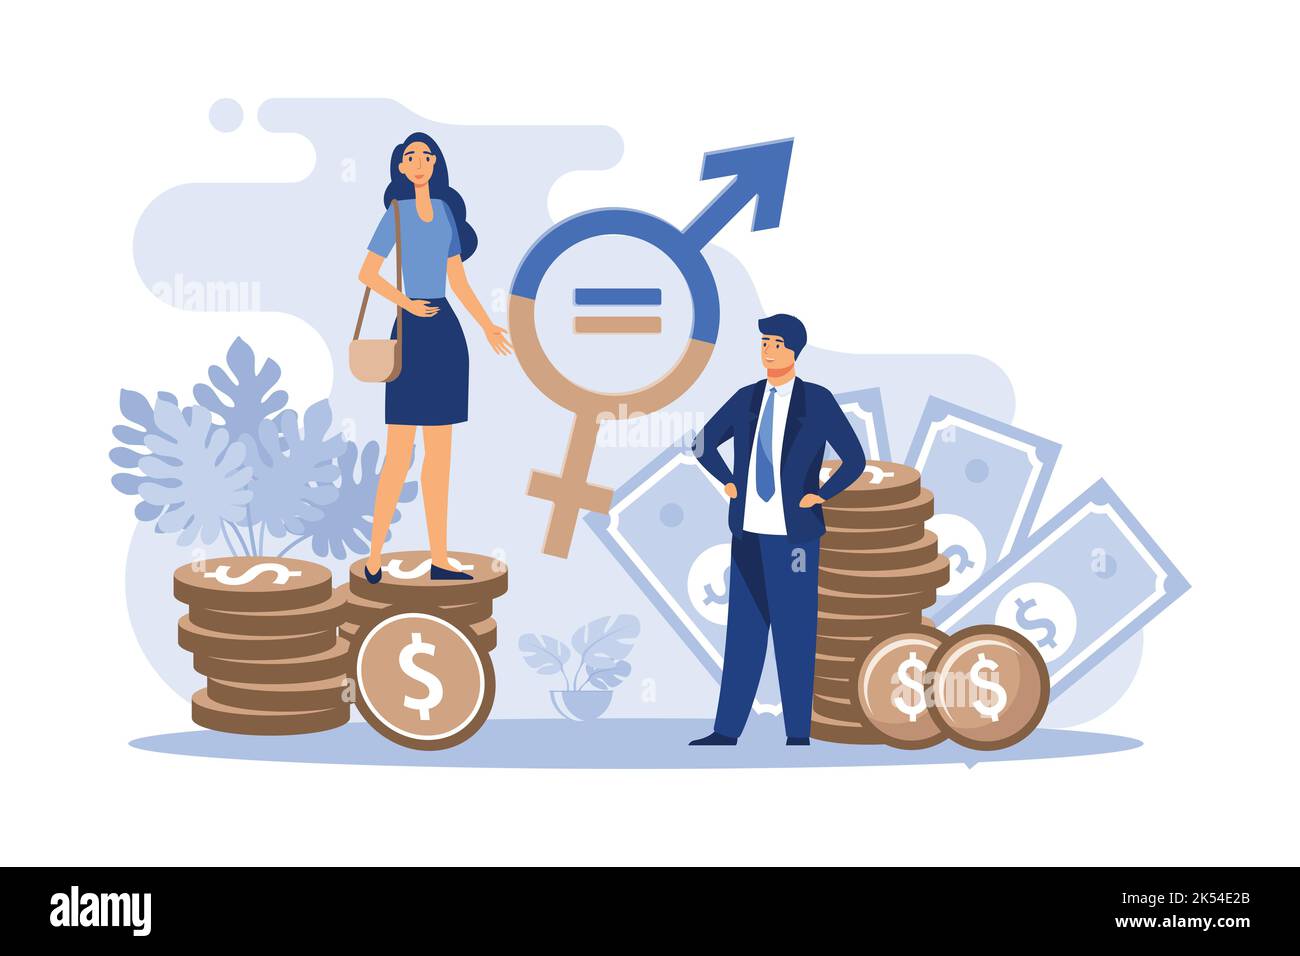 Gleichberechtigung der Geschlechter in Unternehmen isoliert flache Vektor-Illustration. Glückliche weibliche und männliche kleine Charaktere arbeiten mit Respekt zusammen. Vielfalt, bis Stock Vektor